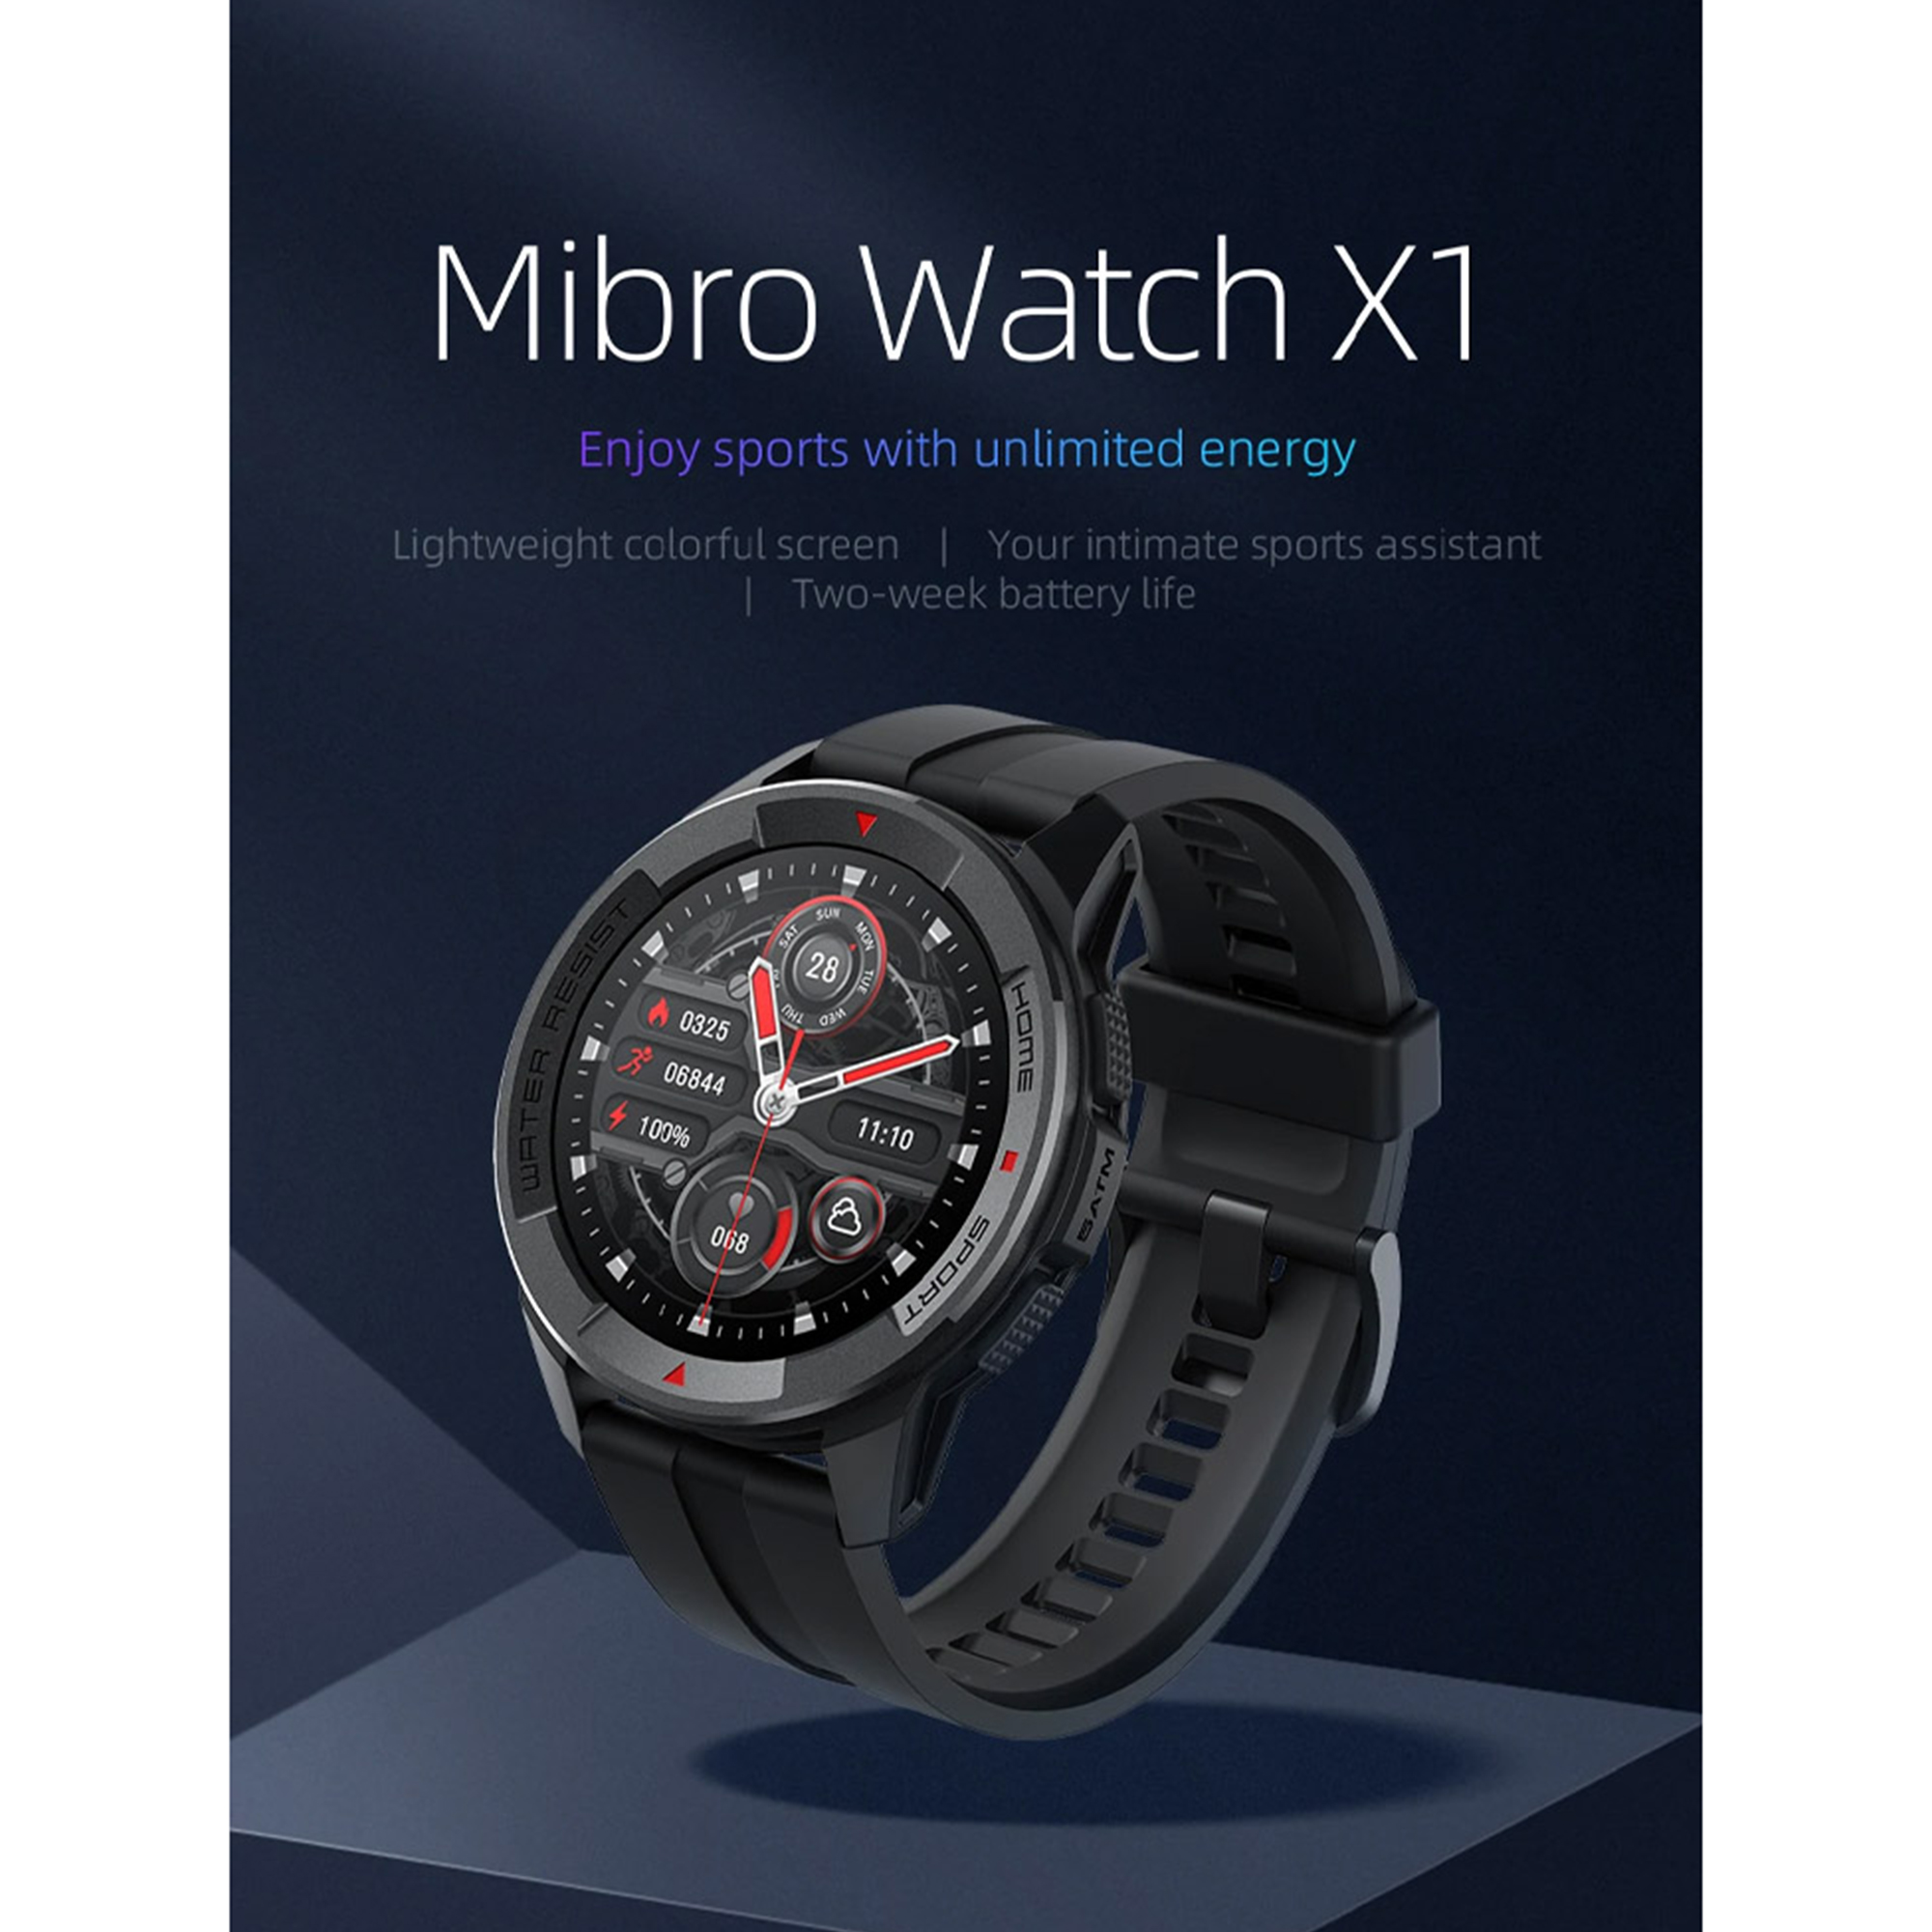 اسمارت واچ  میبرو مدل Mibro Watch X1